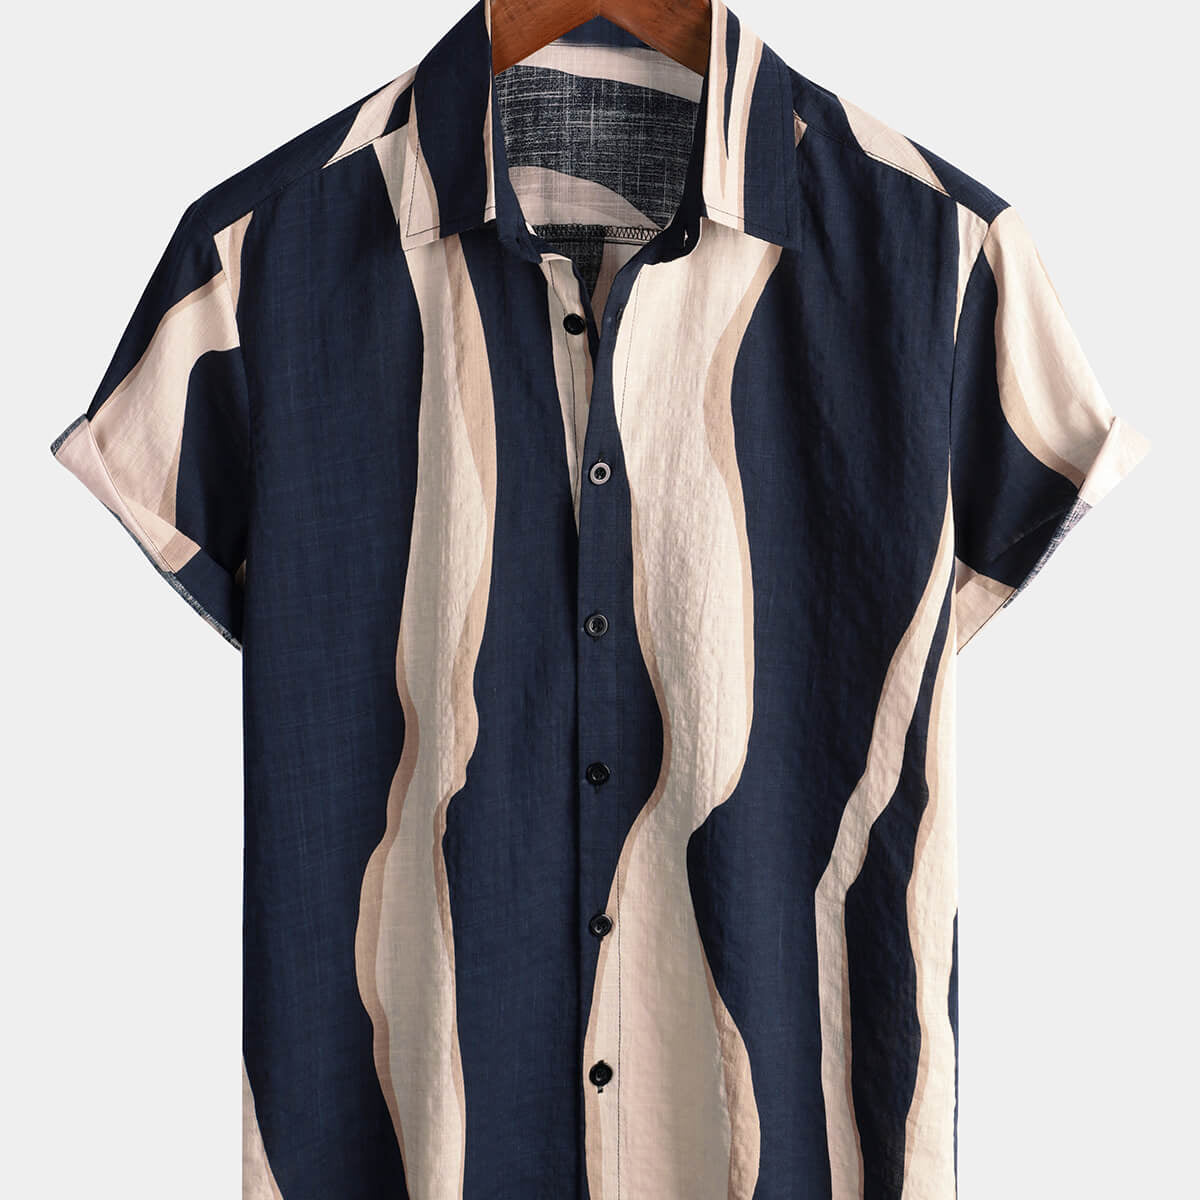 Camisa de manga corta con botones azul marino para vacaciones de verano a rayas informales retro para hombre